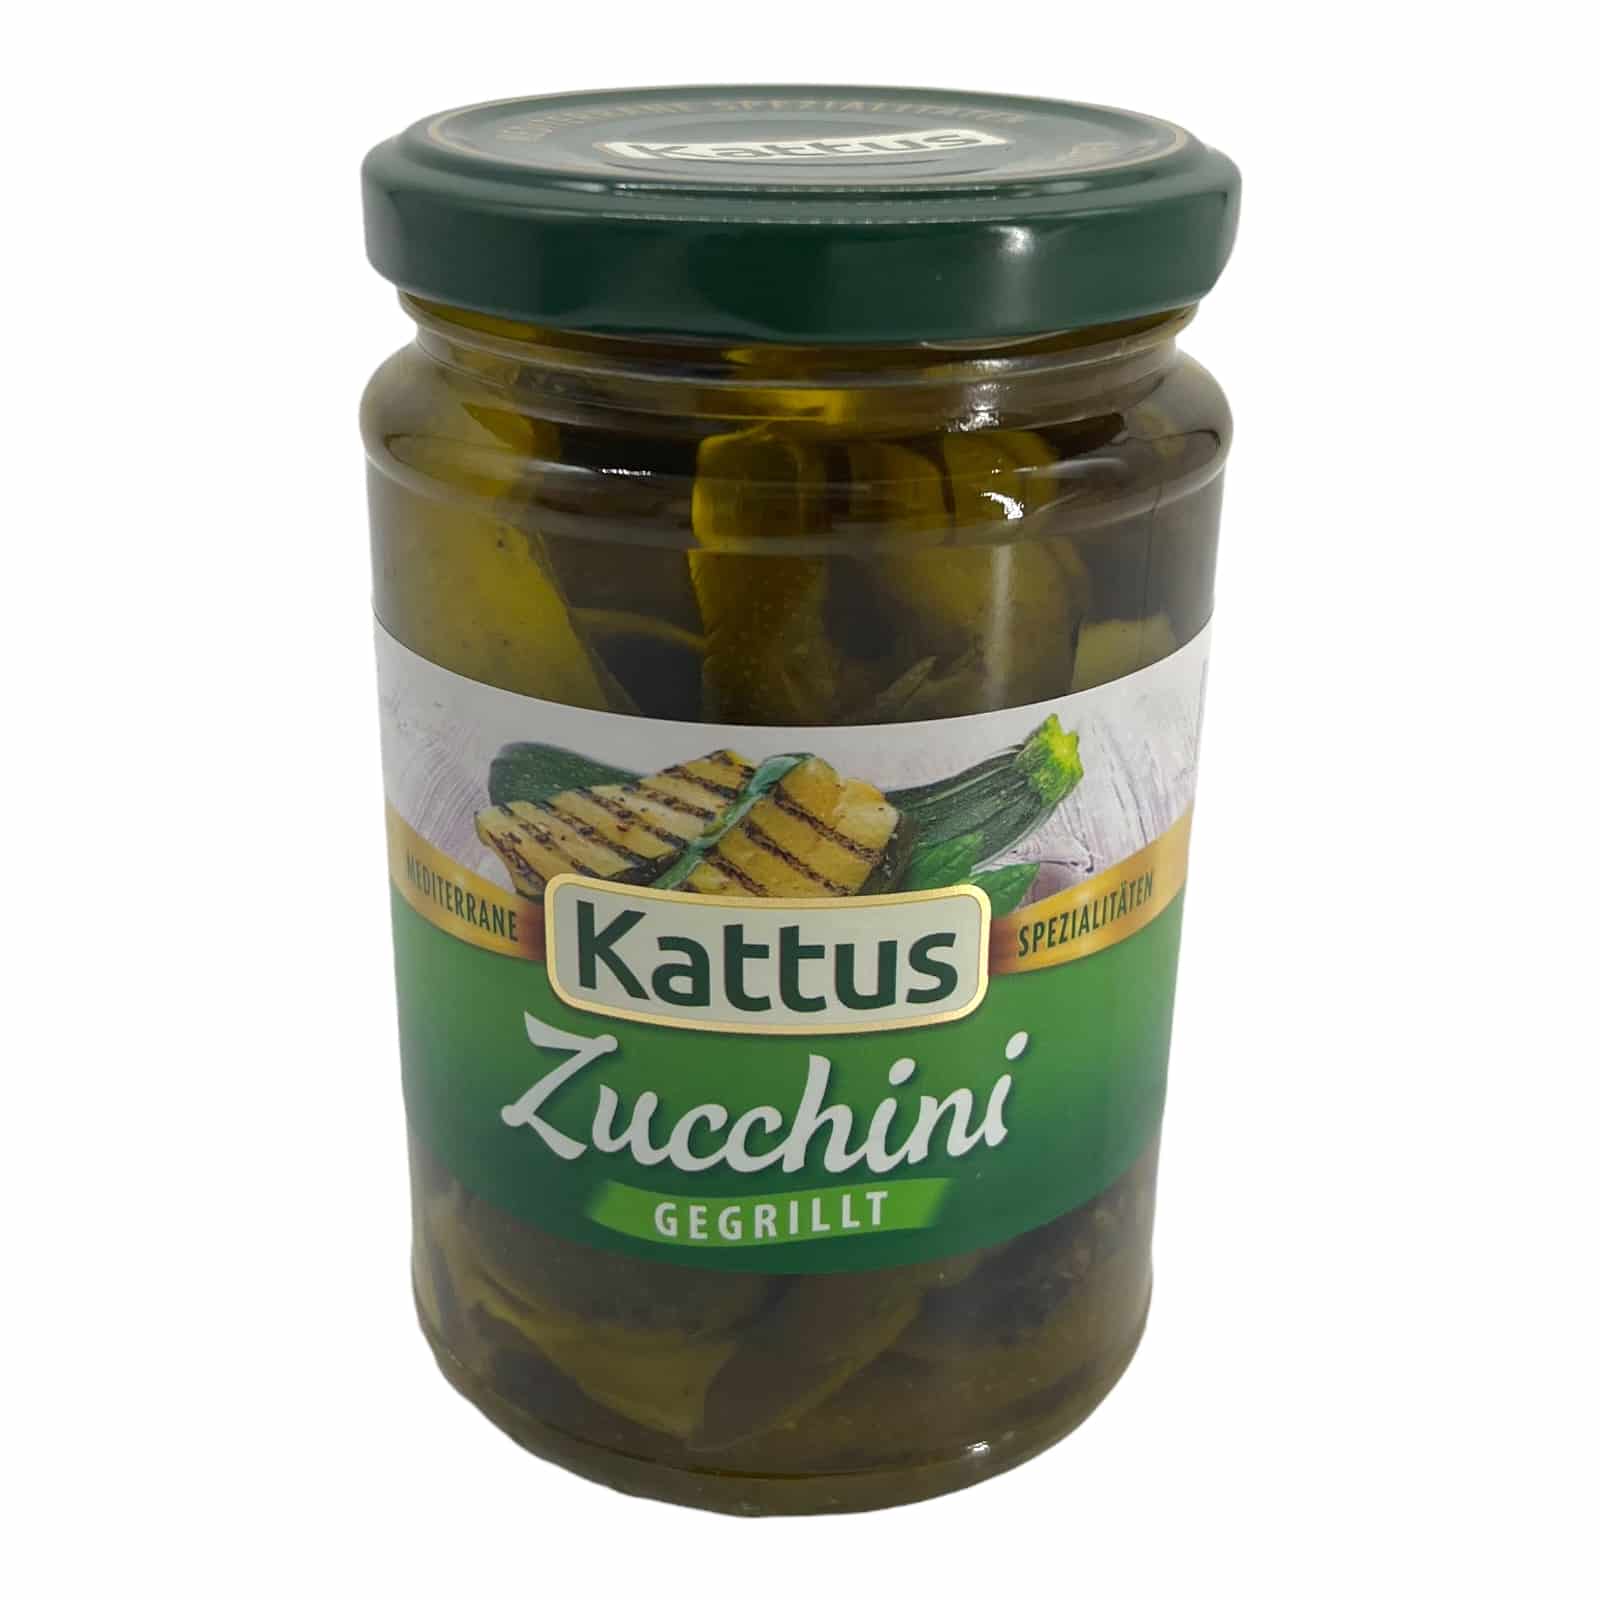 Kattus Zucchini gegrillt 280g